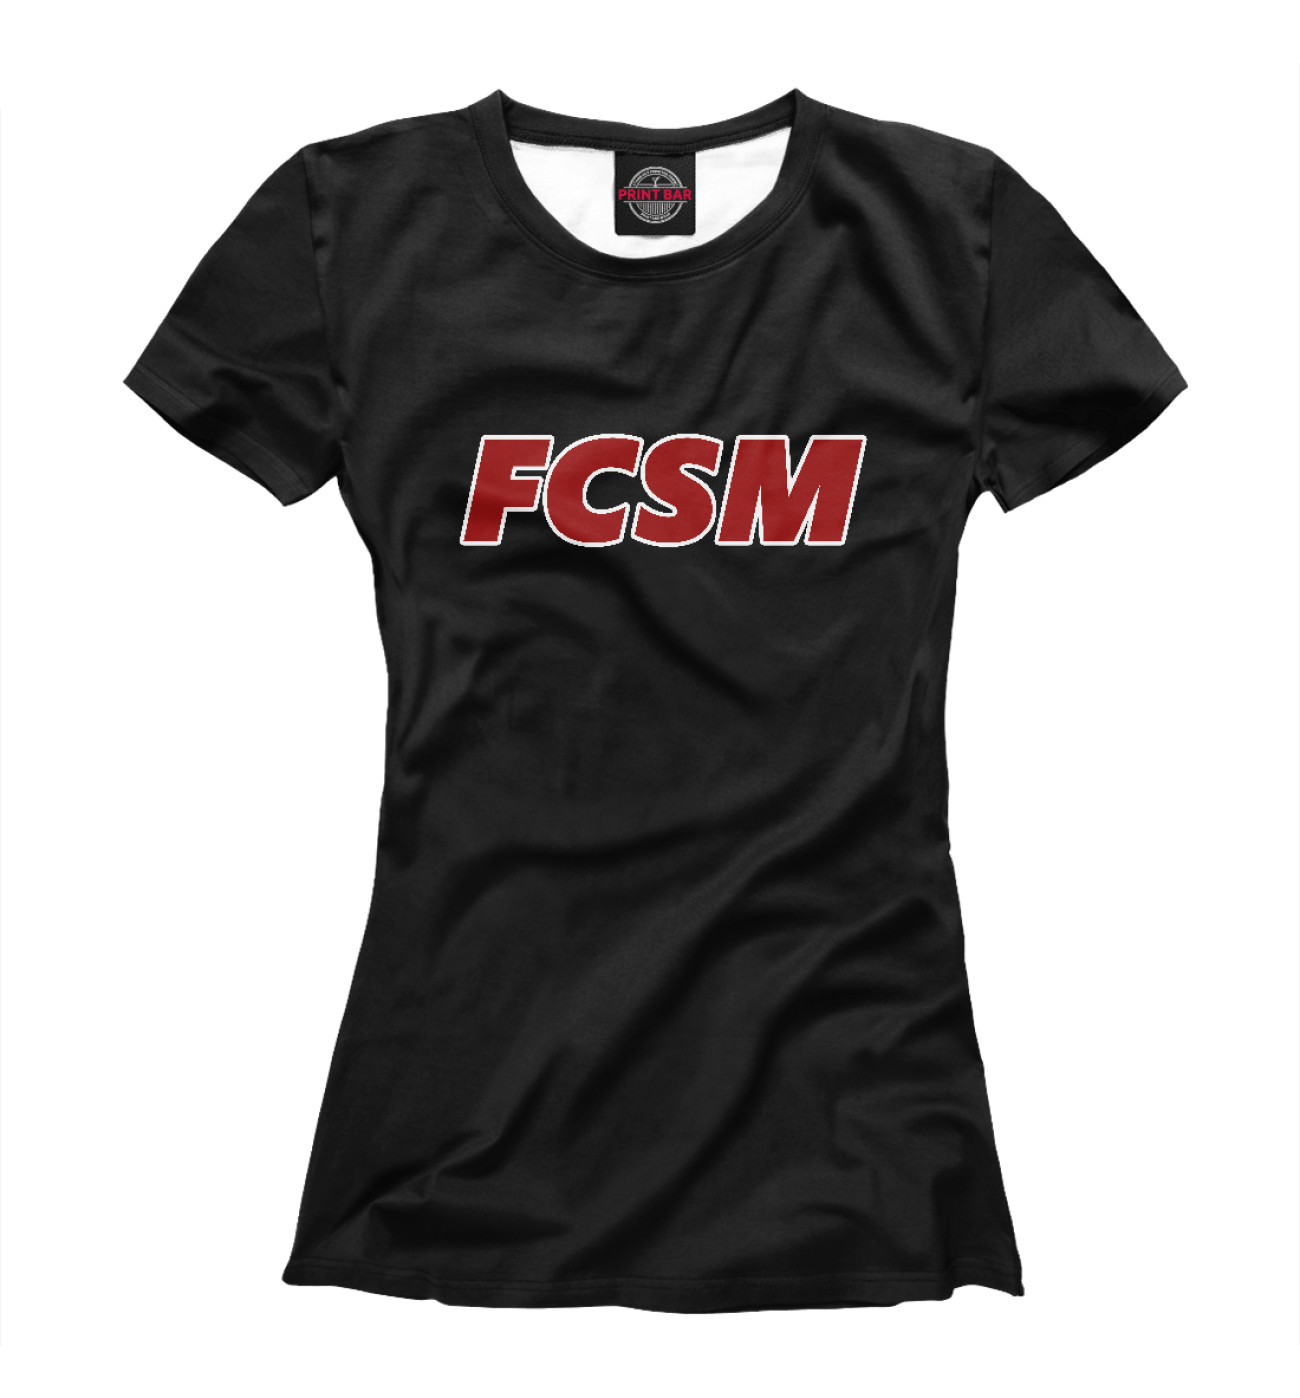 Женская Футболка FCSM, артикул: FTO-182645-fut-1